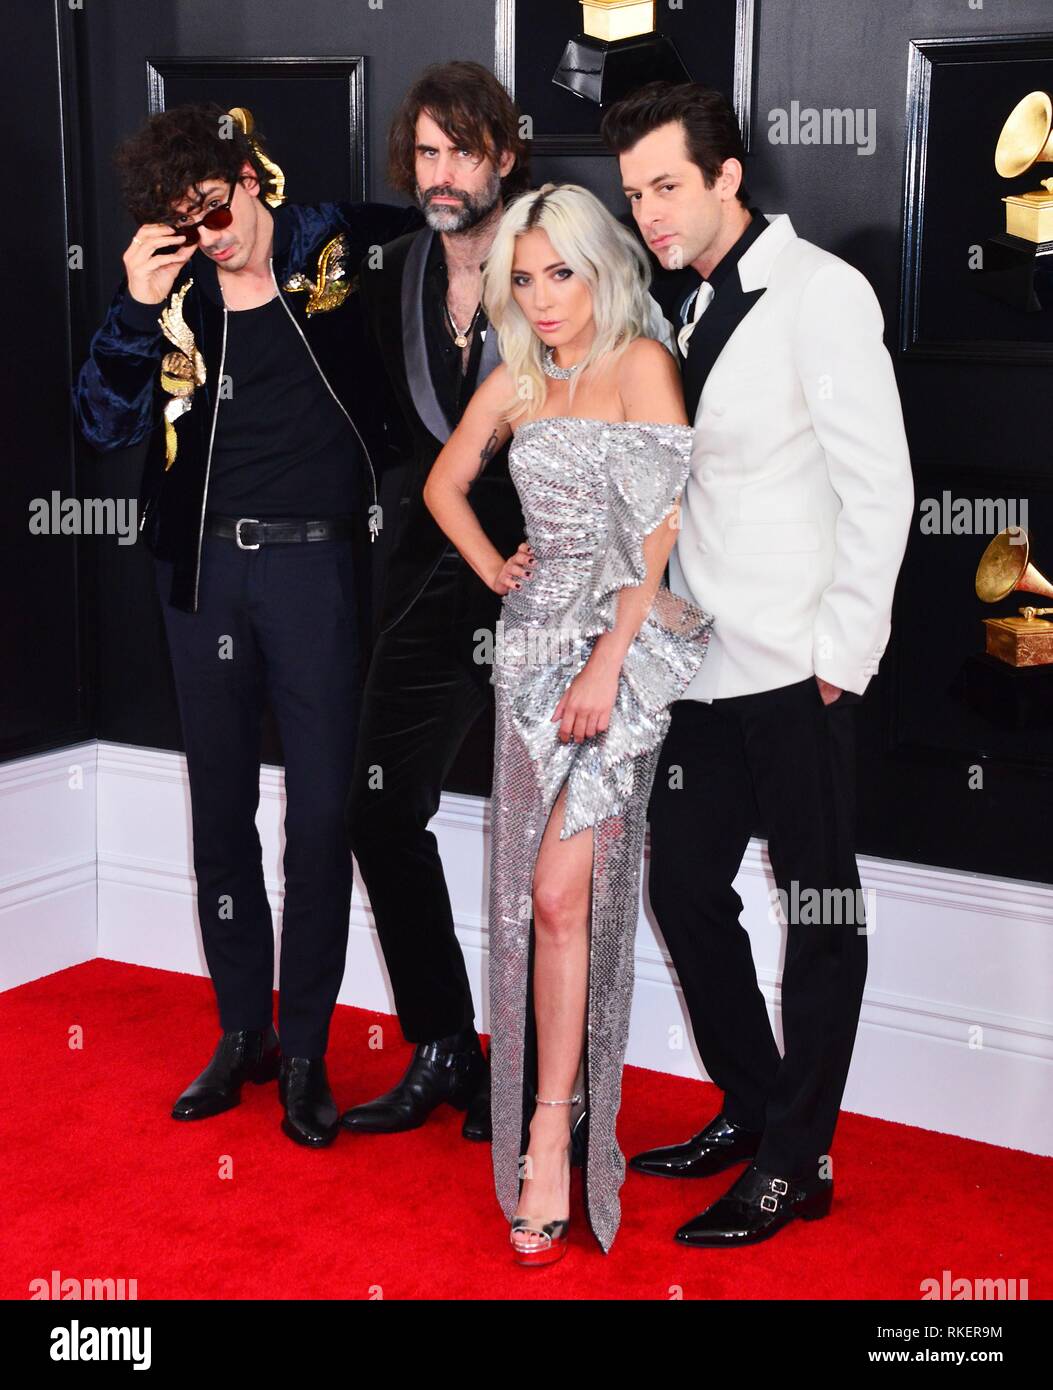 Anthony Rossomando, Lady Gaga, Andrew Wyatt, Mark Ronson presso gli arrivi per 61st Annual Grammy Awards - Arrivi, Staples Center di Los Angeles, CA Febbraio 10, 2019. Foto di: Tsuni/Everett Collection Foto Stock